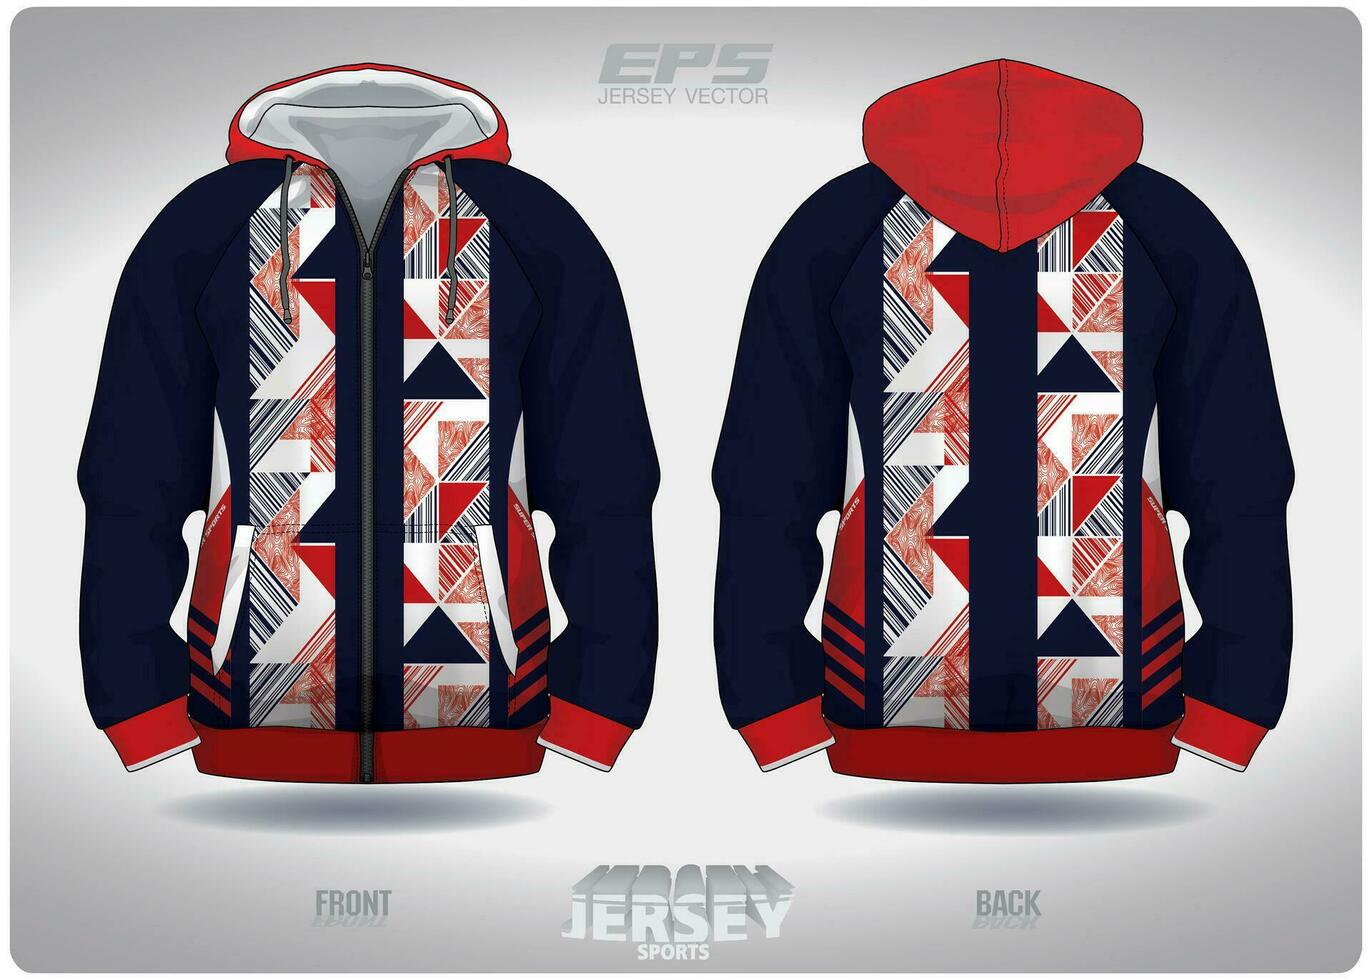 eps jersey sporter skjorta vektor.komplex röd blå triangel mönster design, illustration, textil- bakgrund för sporter lång ärm luvtröja vektor